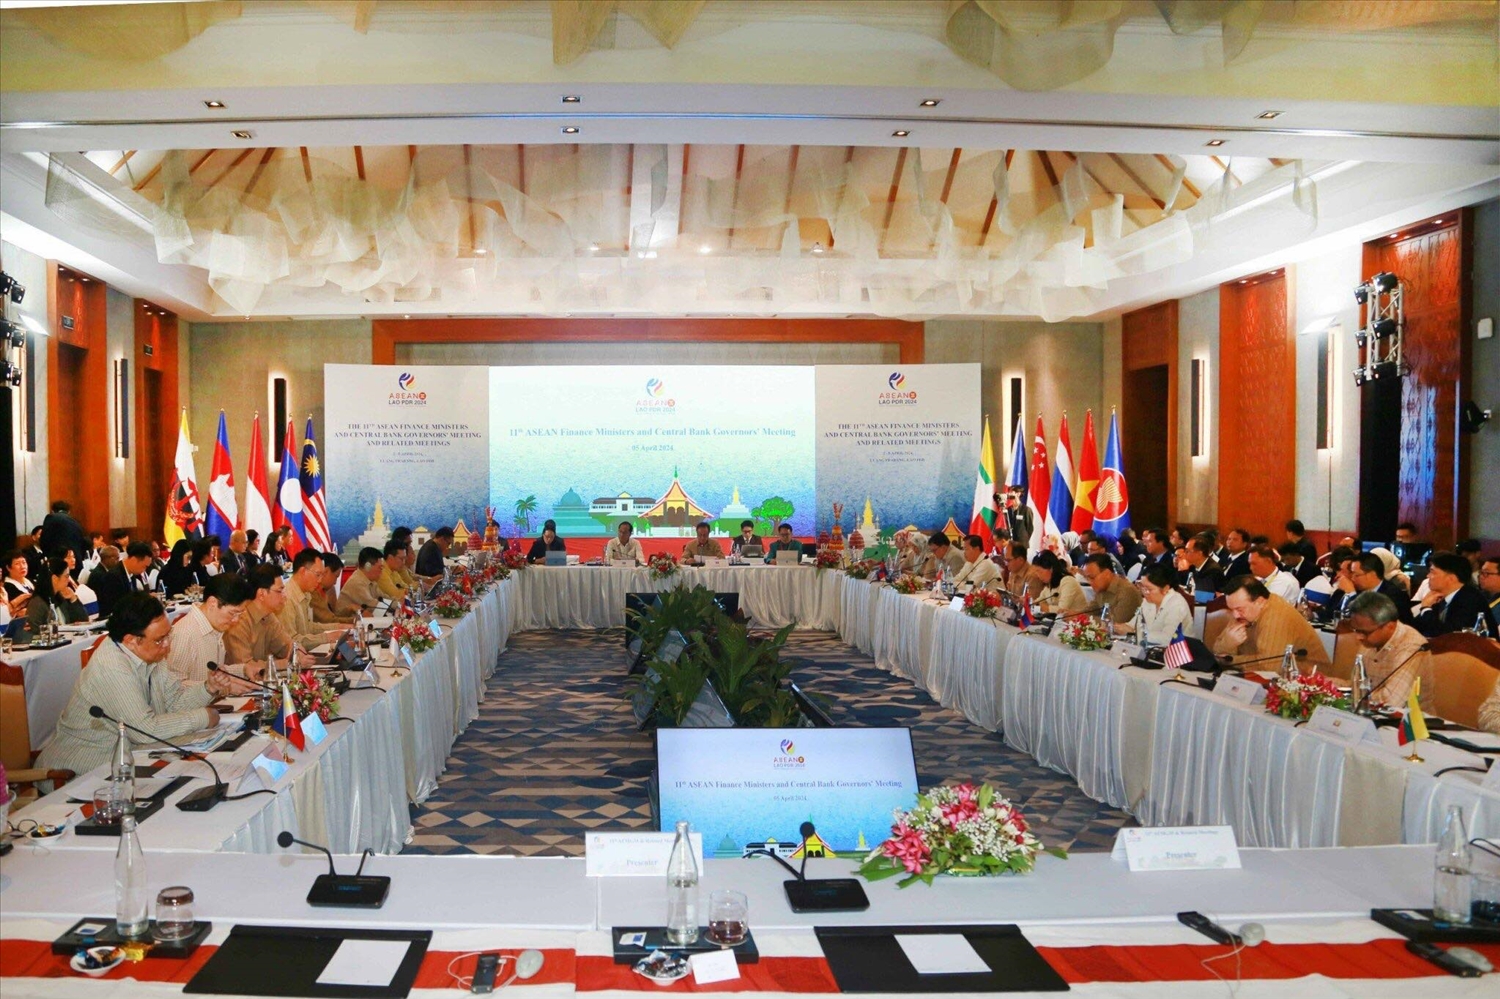 Hội nghị lãnh đạo ngành tài chính ASEAN lần thứ 28 (AFMM 28) trao đổi các kế hoạch, giải pháp thúc đẩy hợp tác trong khu vực